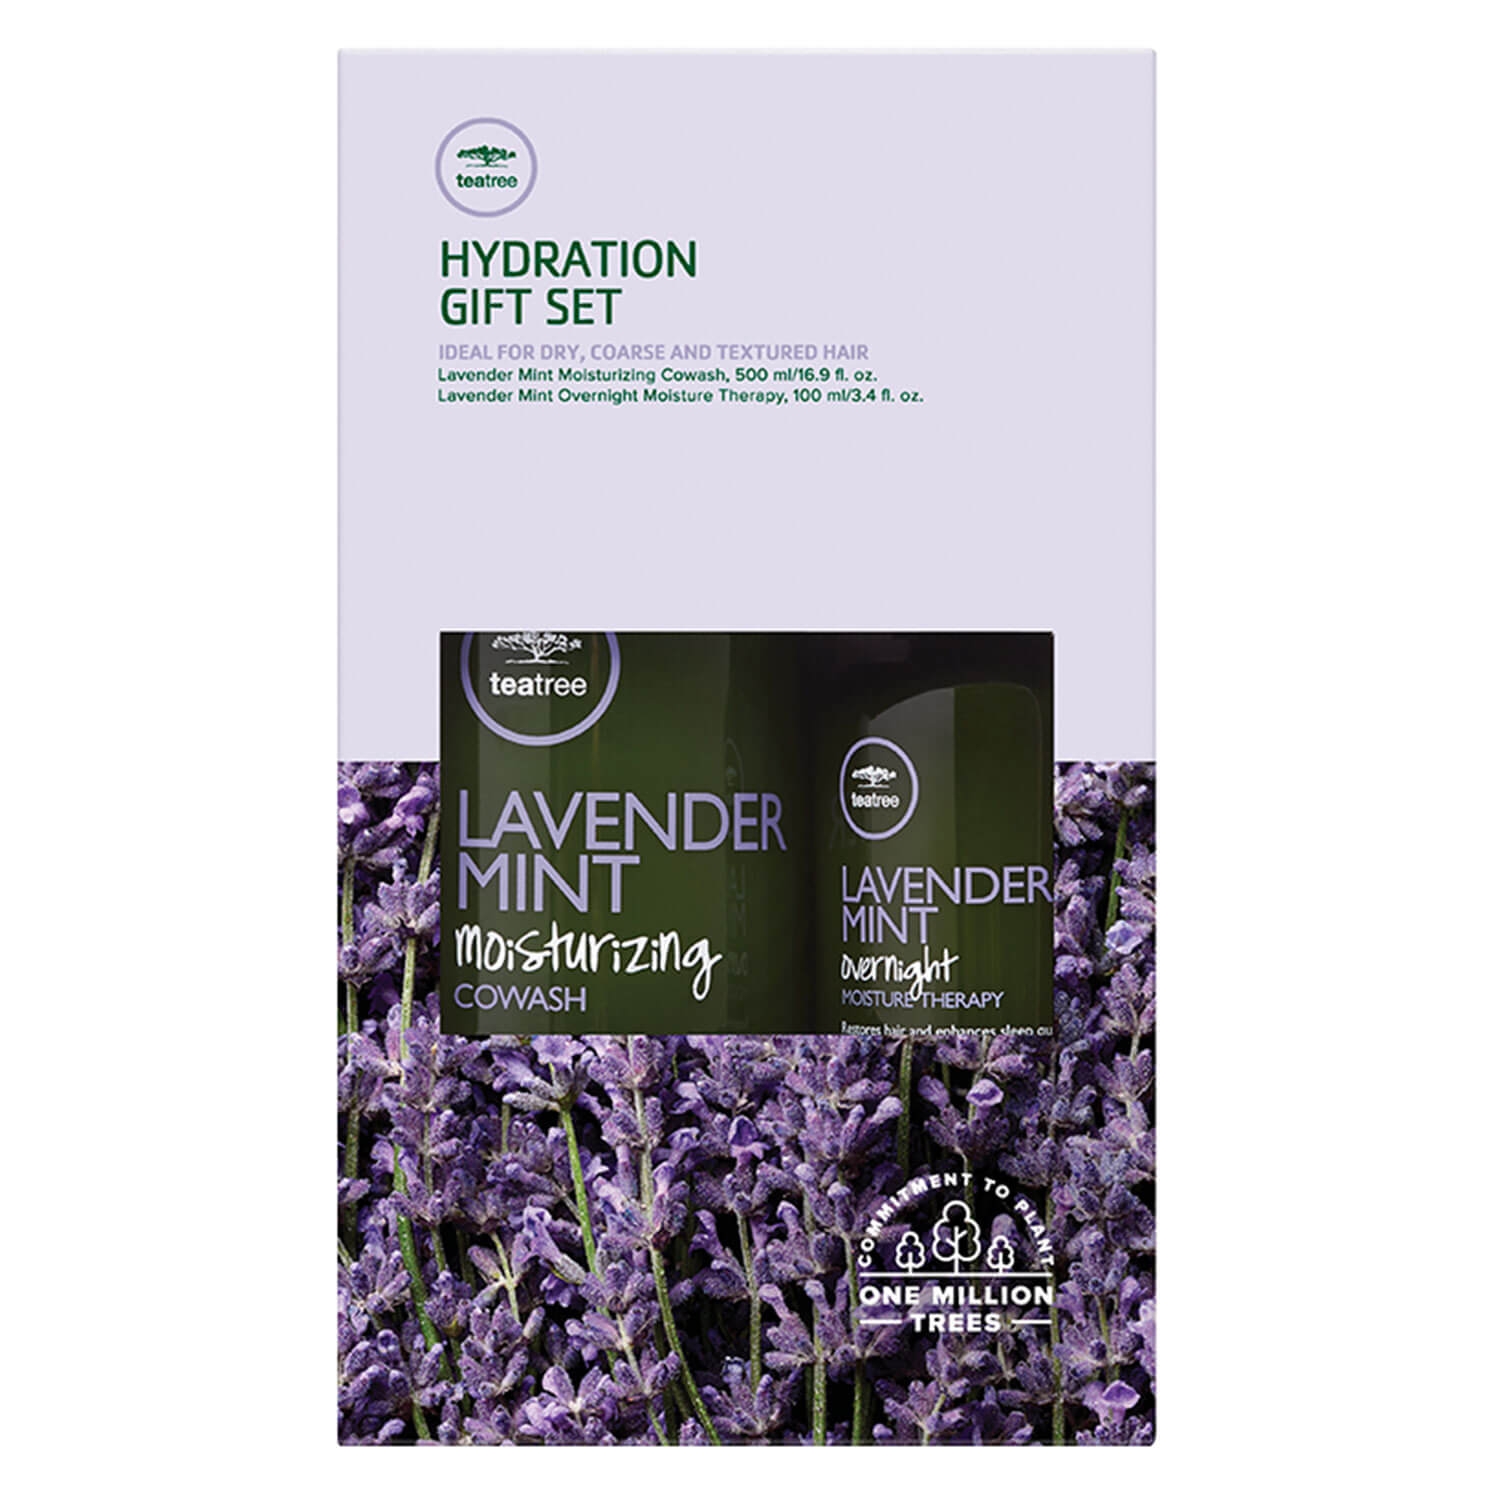 Produktbild von Tea Tree Lavender Mint - Hydration Gift Set